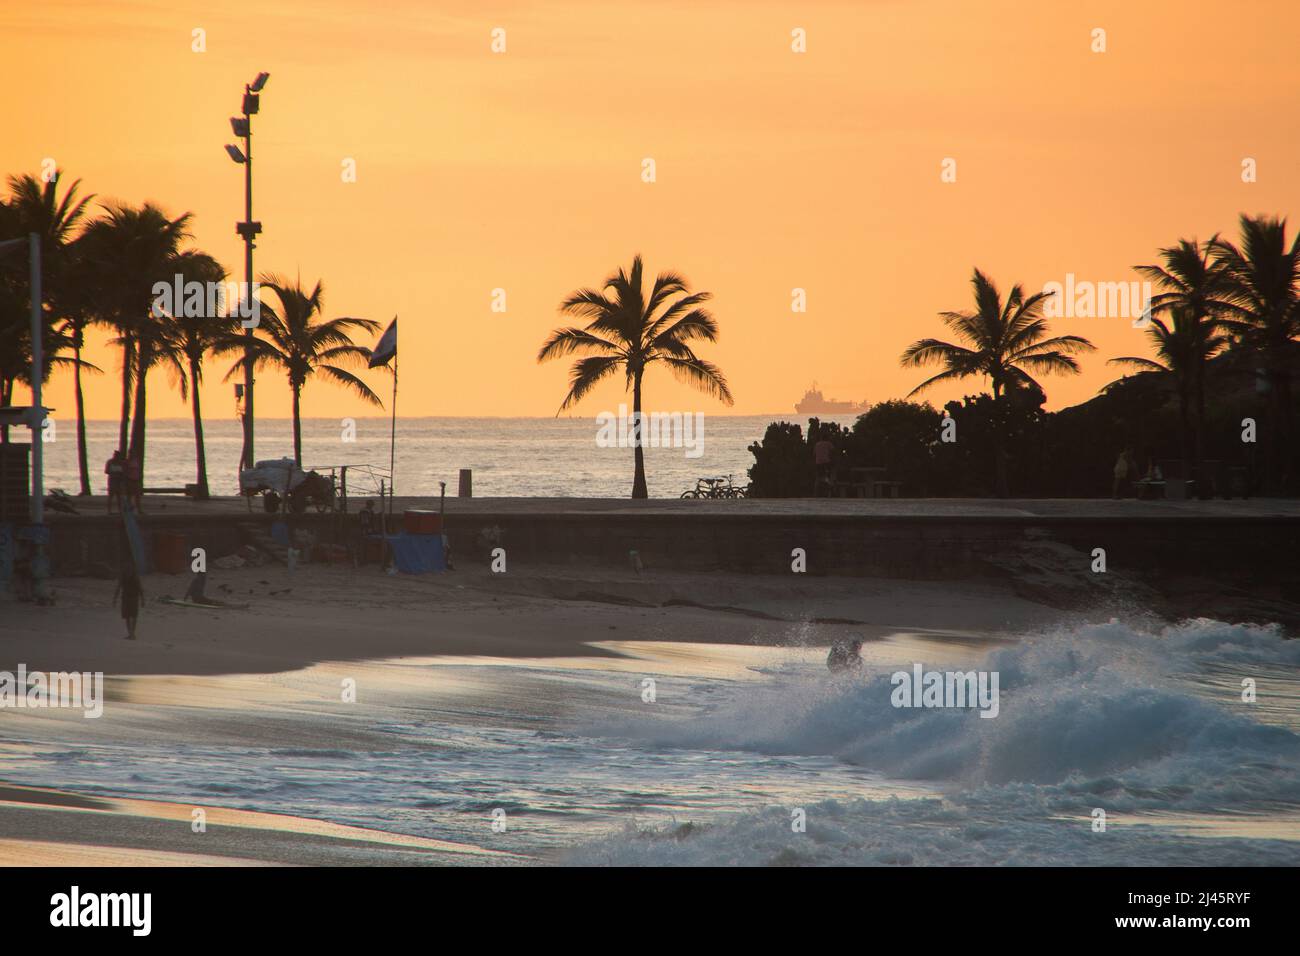 sunrise at arpoador beach in Rio de Janeiro, Brazil. Stock Photo